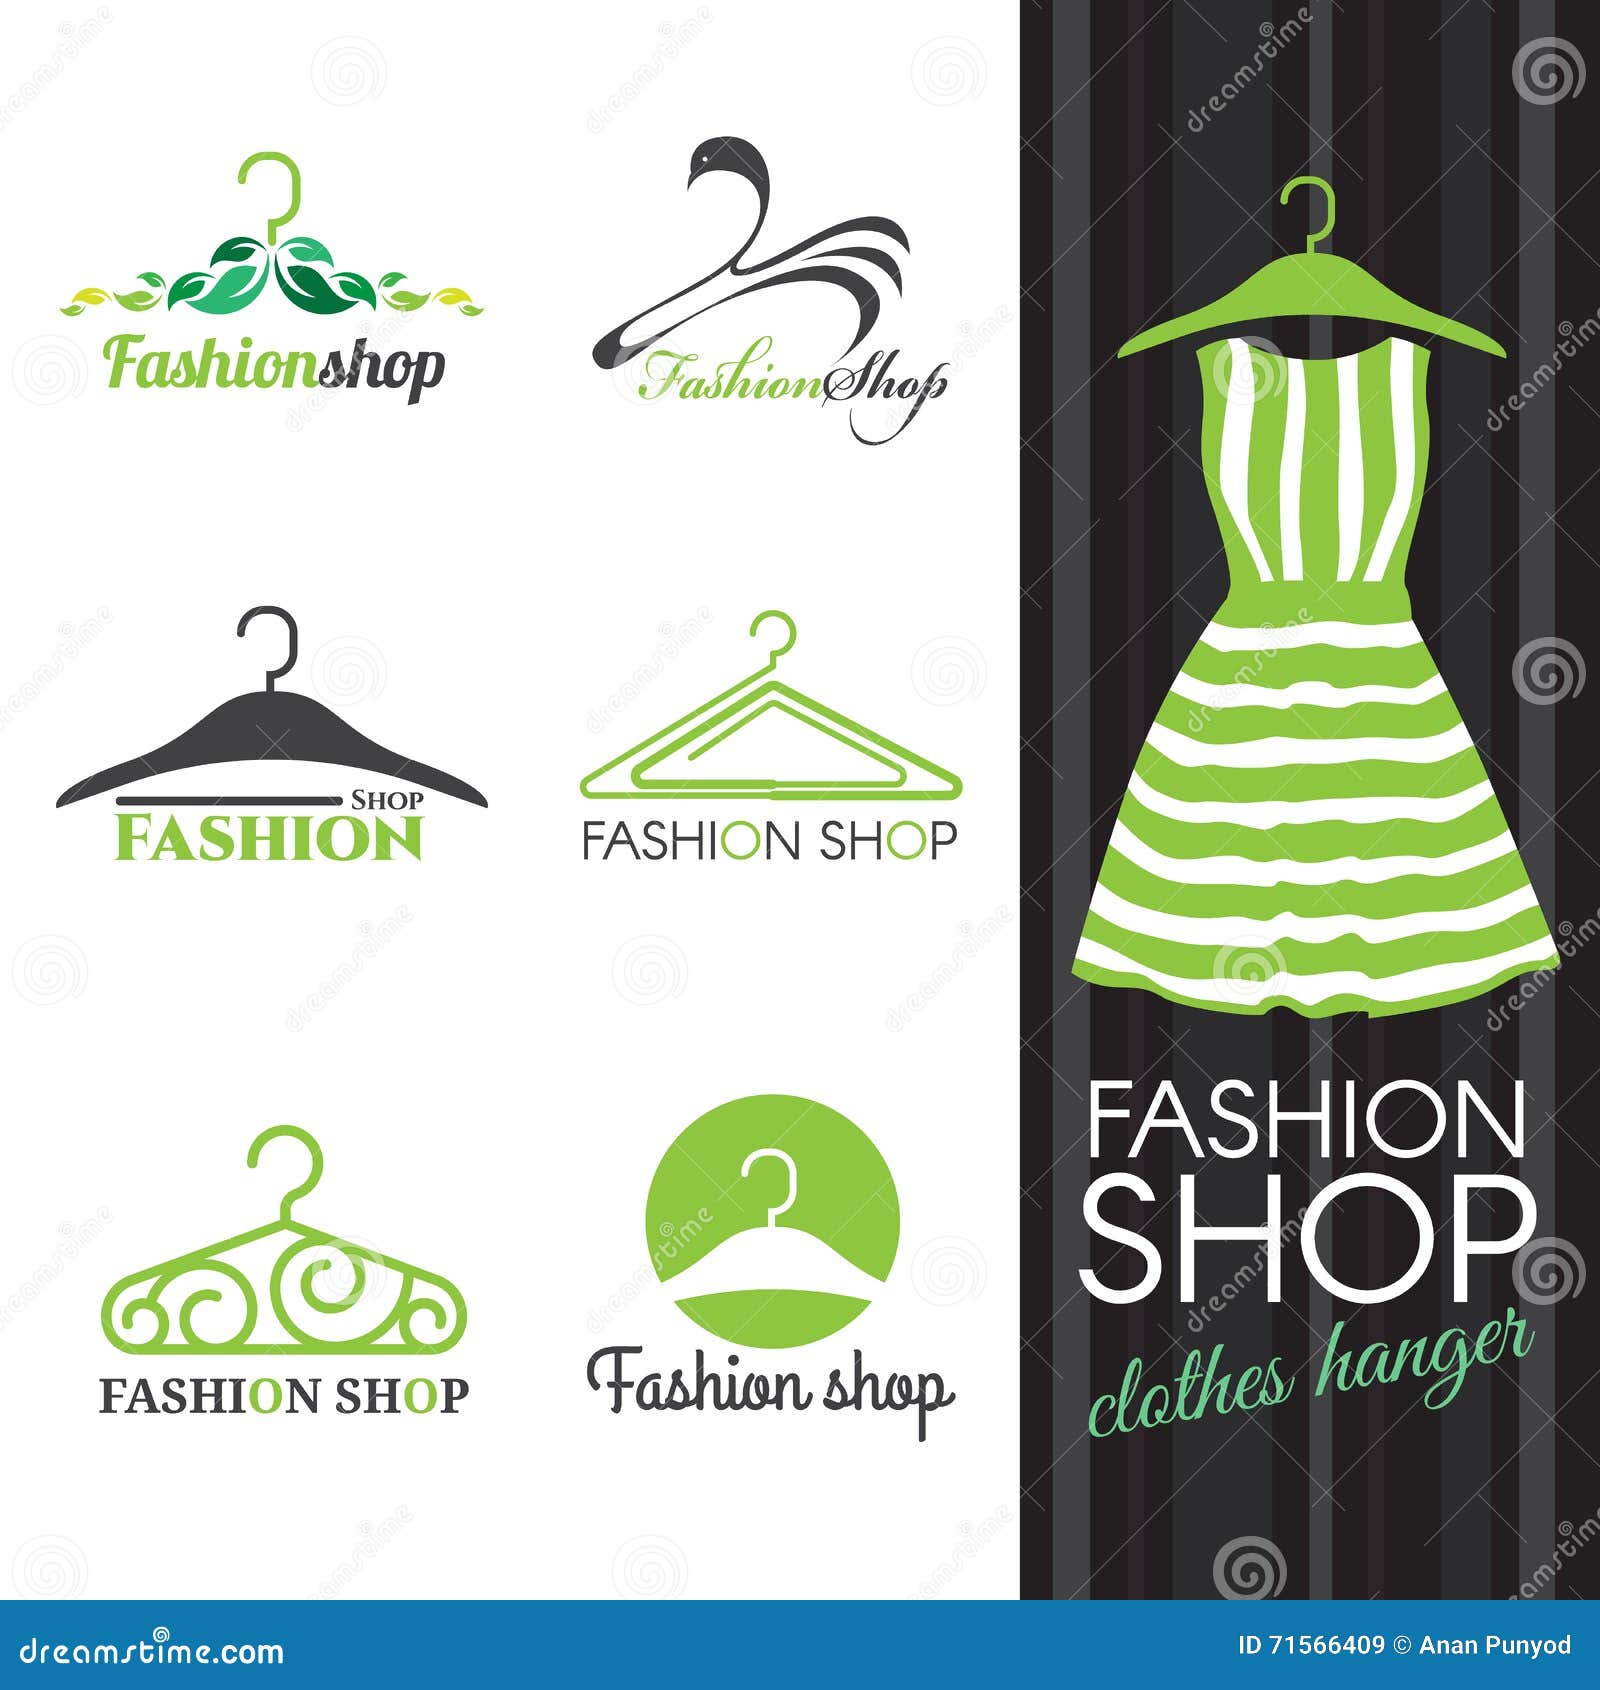 Fashion shop logo stock vector. Illustration of leaf - 71566409